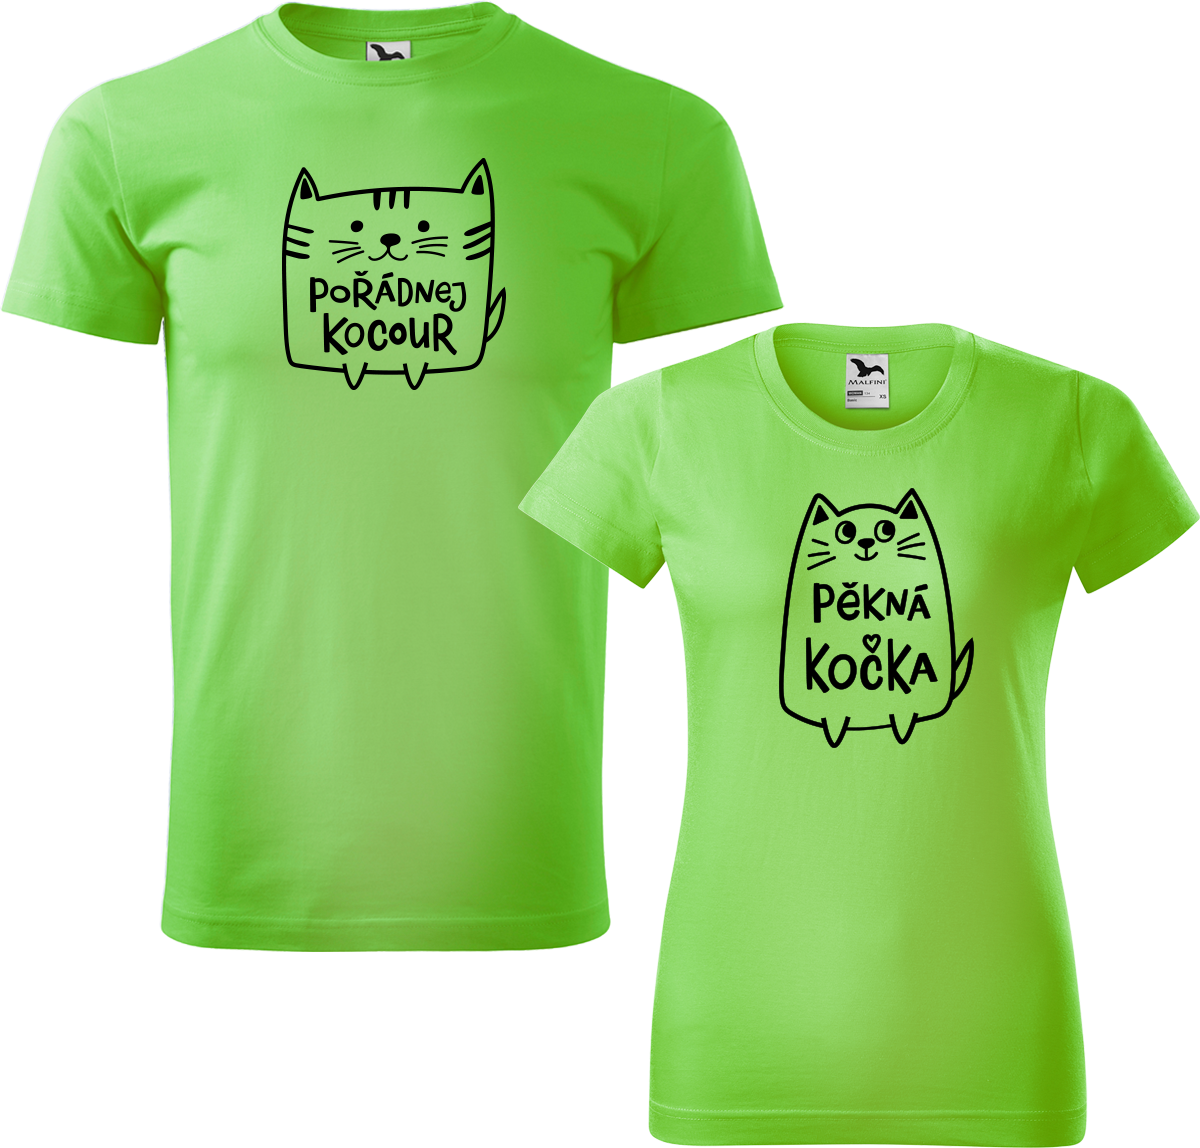 Trička pro páry - Pořádnej kocour a pěkná kočka Barva: Apple Green (92), Velikost dámské tričko: M, Velikost pánské tričko: M